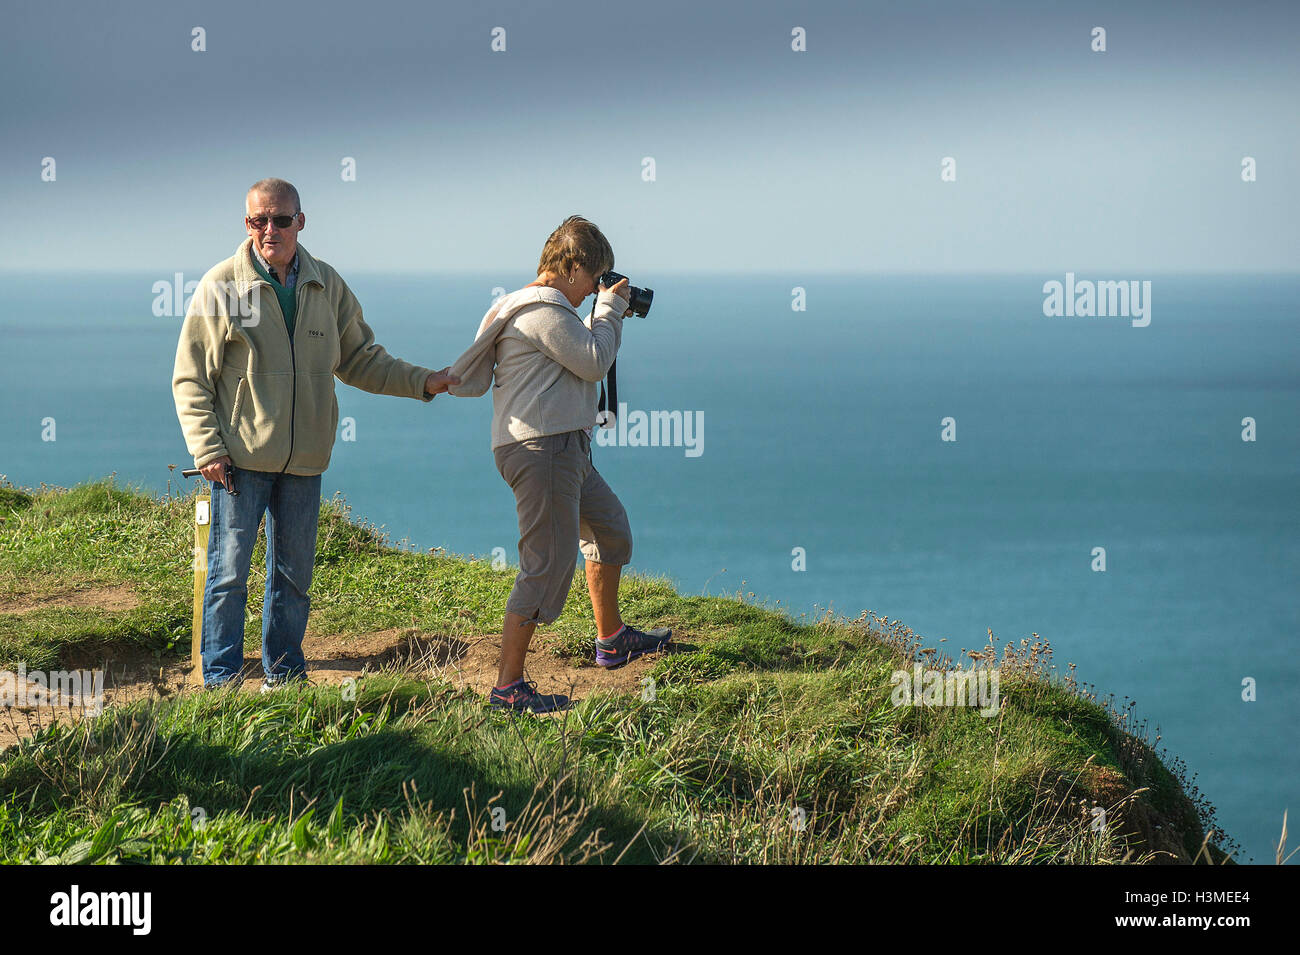 Un homme s'accroche aux vêtements de sa femme alors qu'elle se tenir sur le bord d'une falaise pour prendre une photo. Banque D'Images